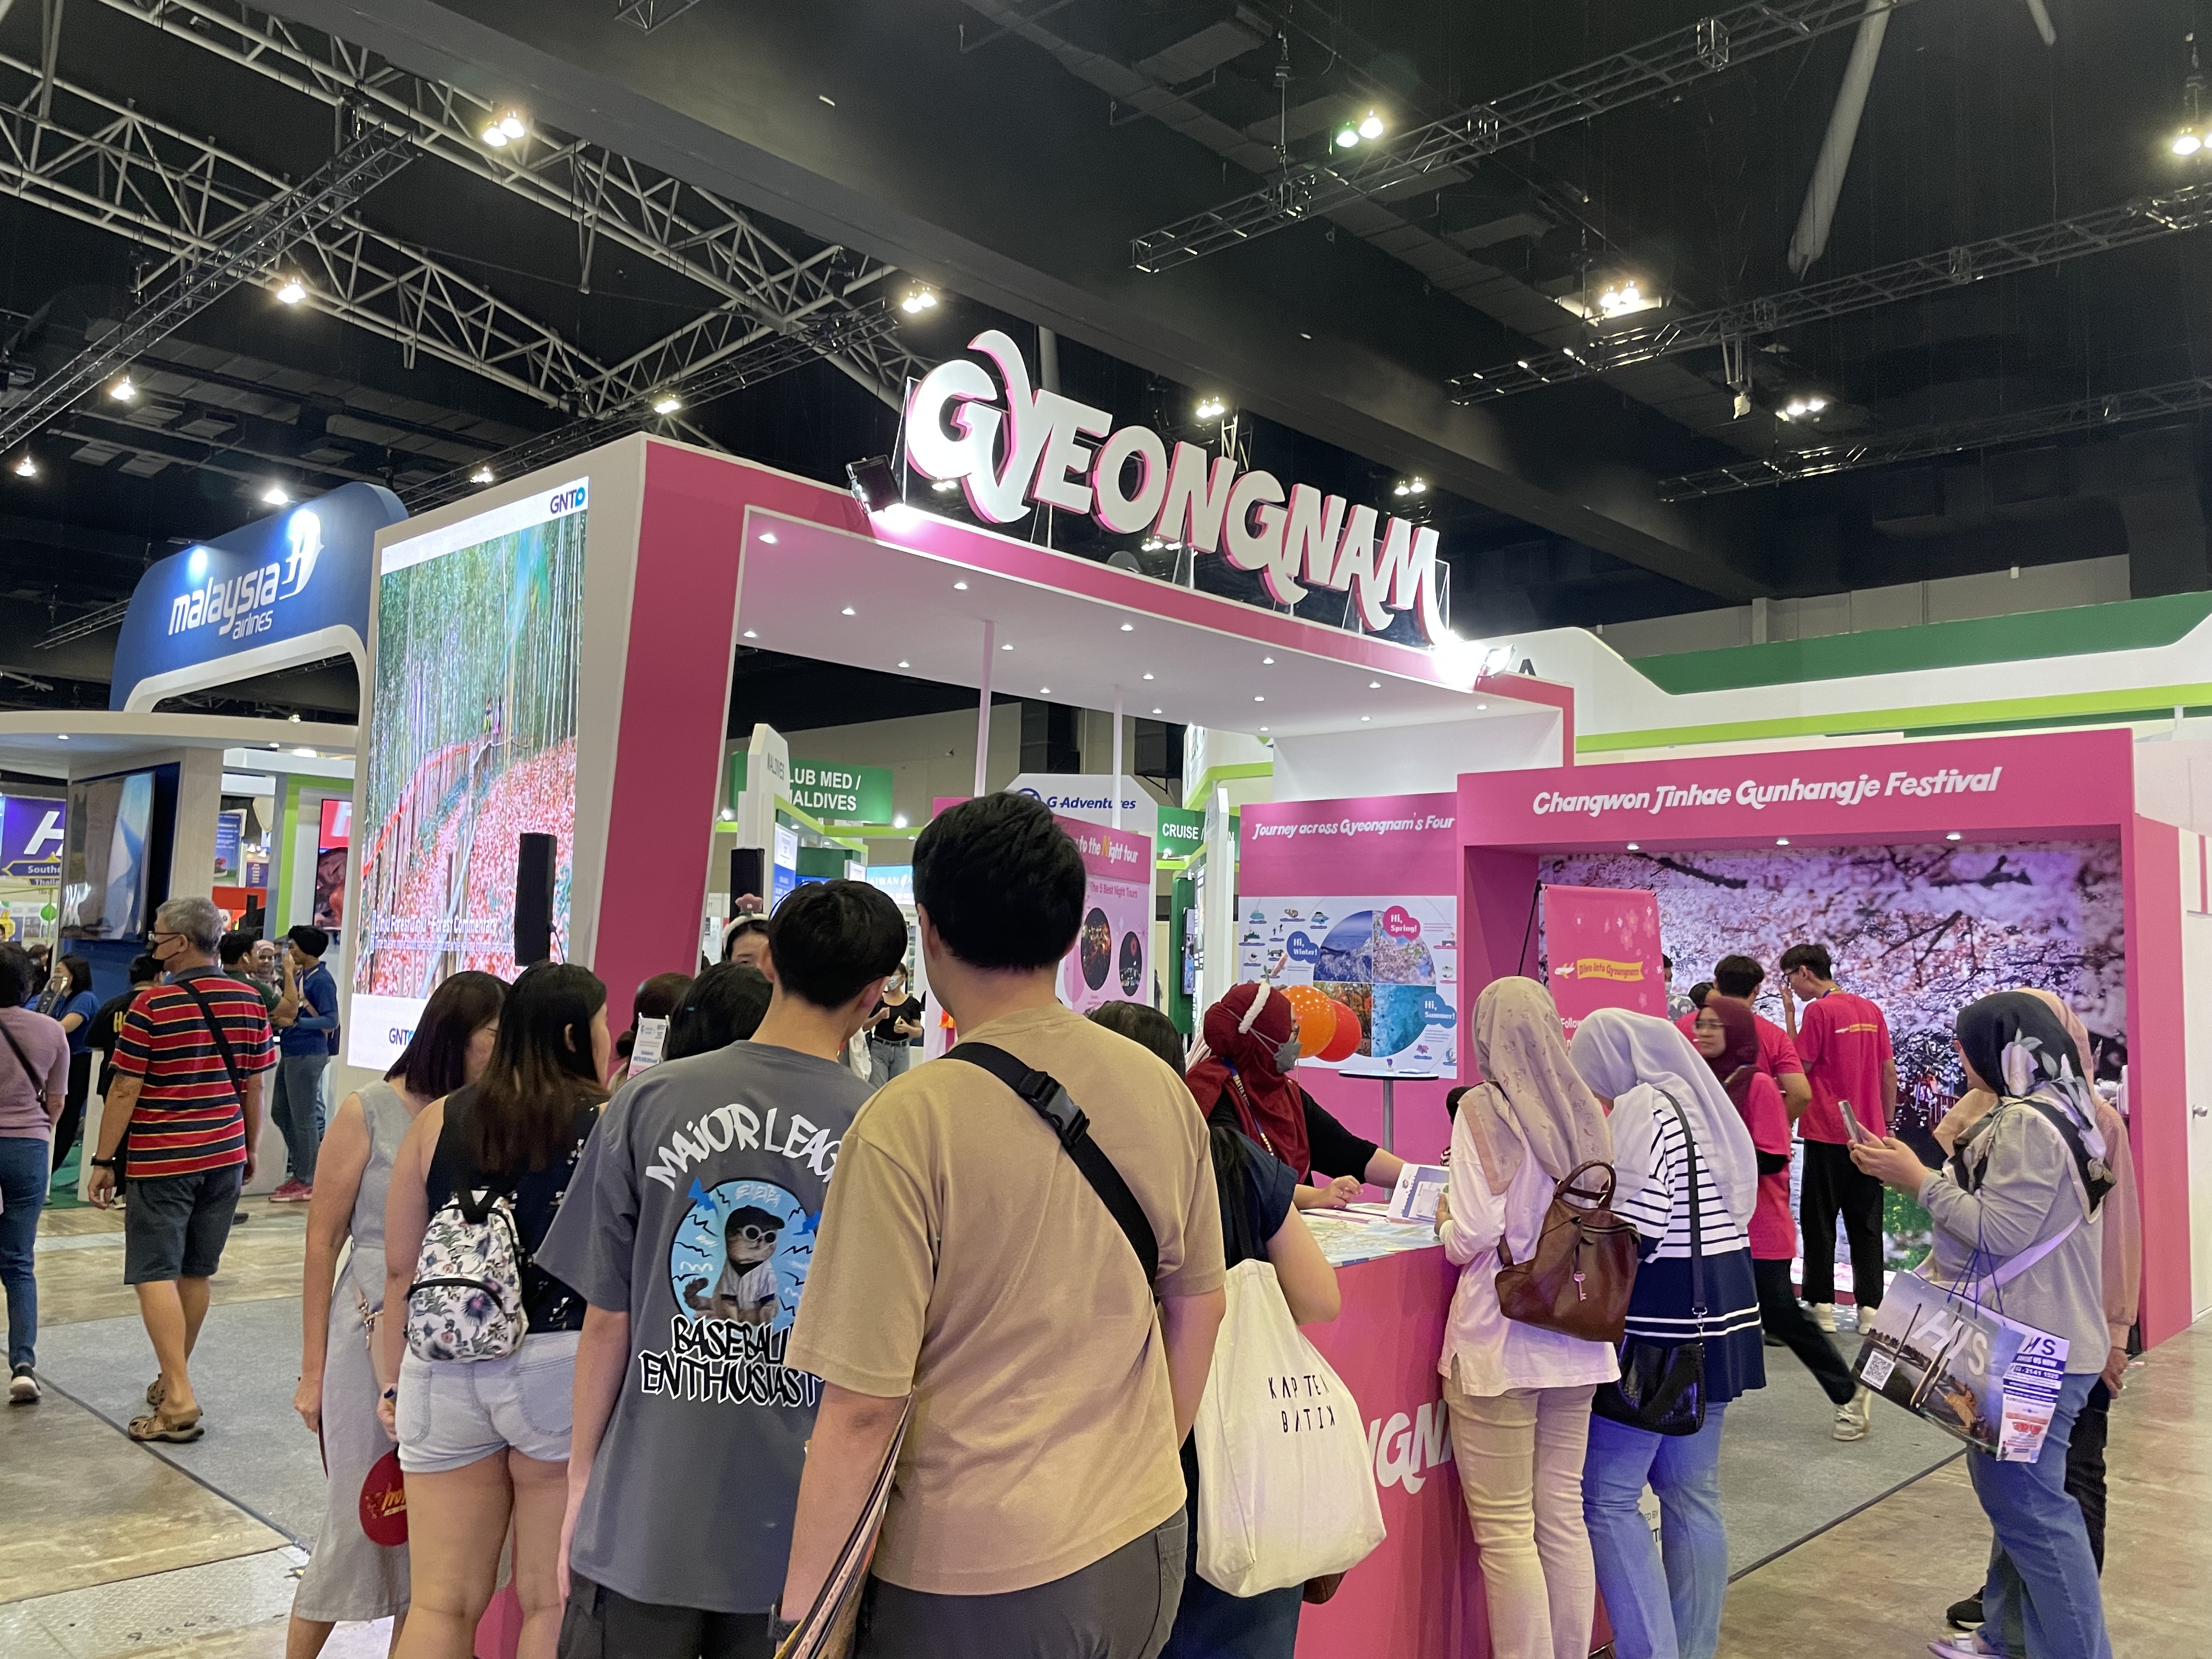 Tỉnh Gyeongnam đẩy mạnh thu hút khách du lịch nước ngoài thông qua các chương trình quảng bá quy mô lớn tại chỗ ở Malaysia의 파일 이미지